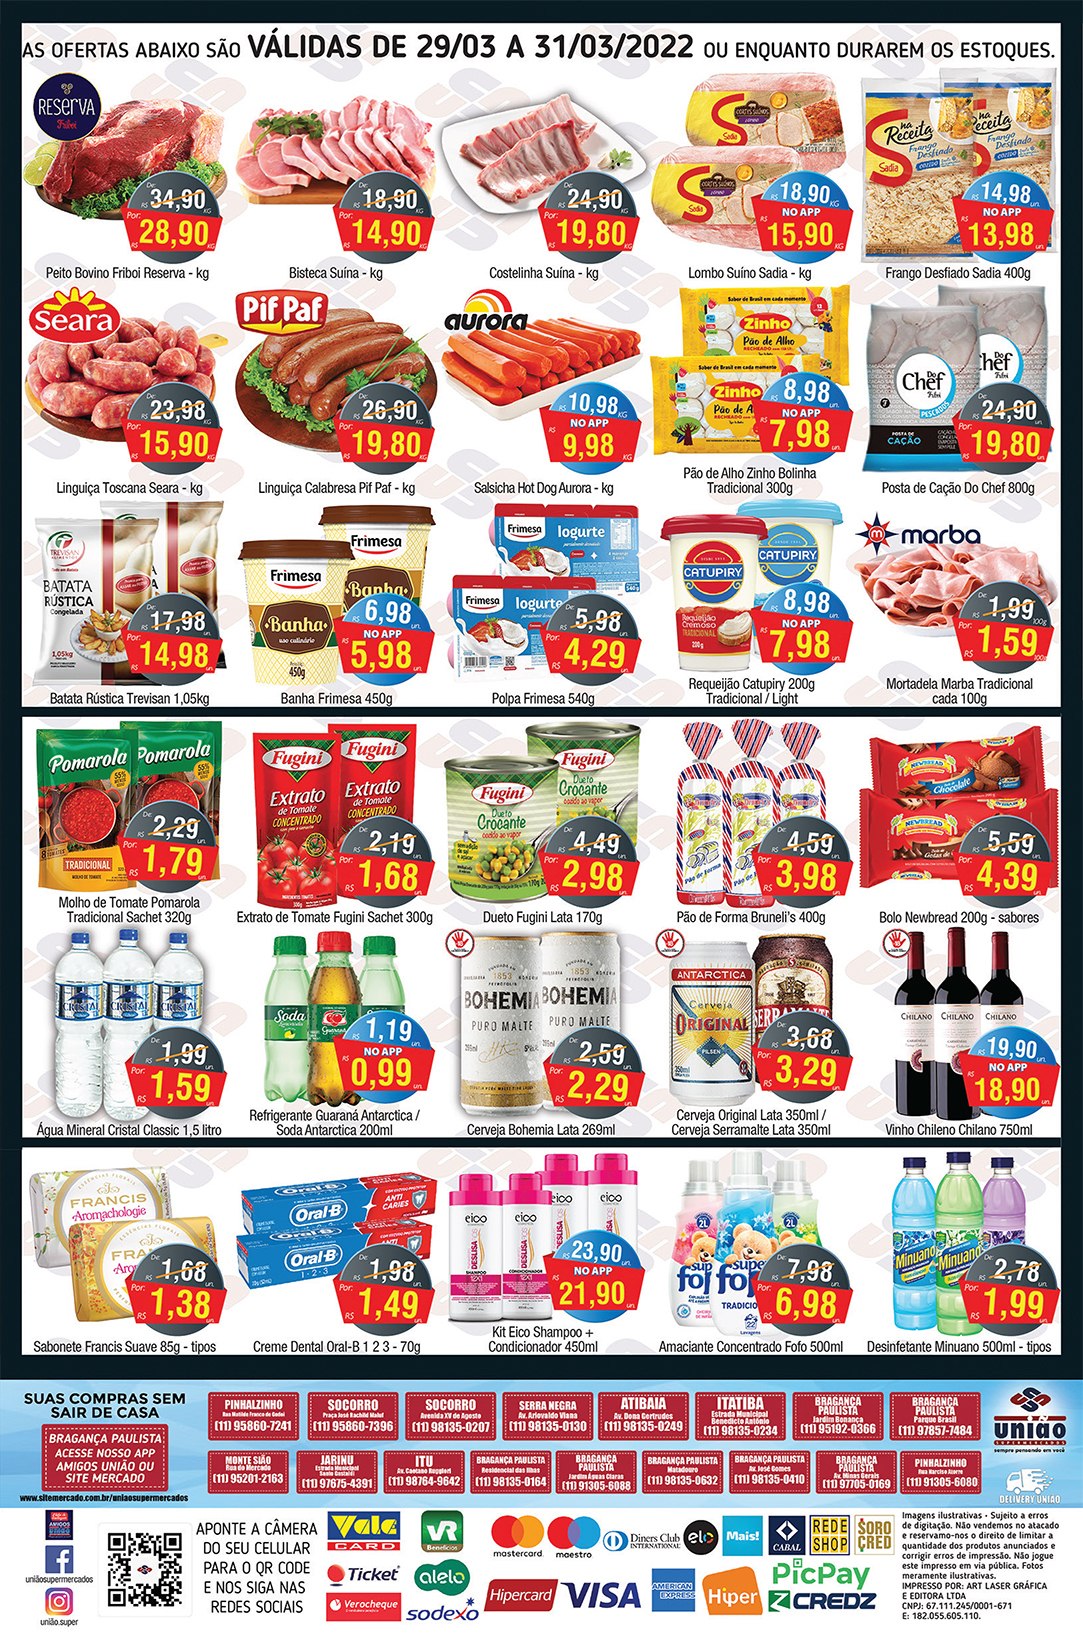 Ofertas em hortifrúti, carnes, bebidas e muito mais, no União Supermercados